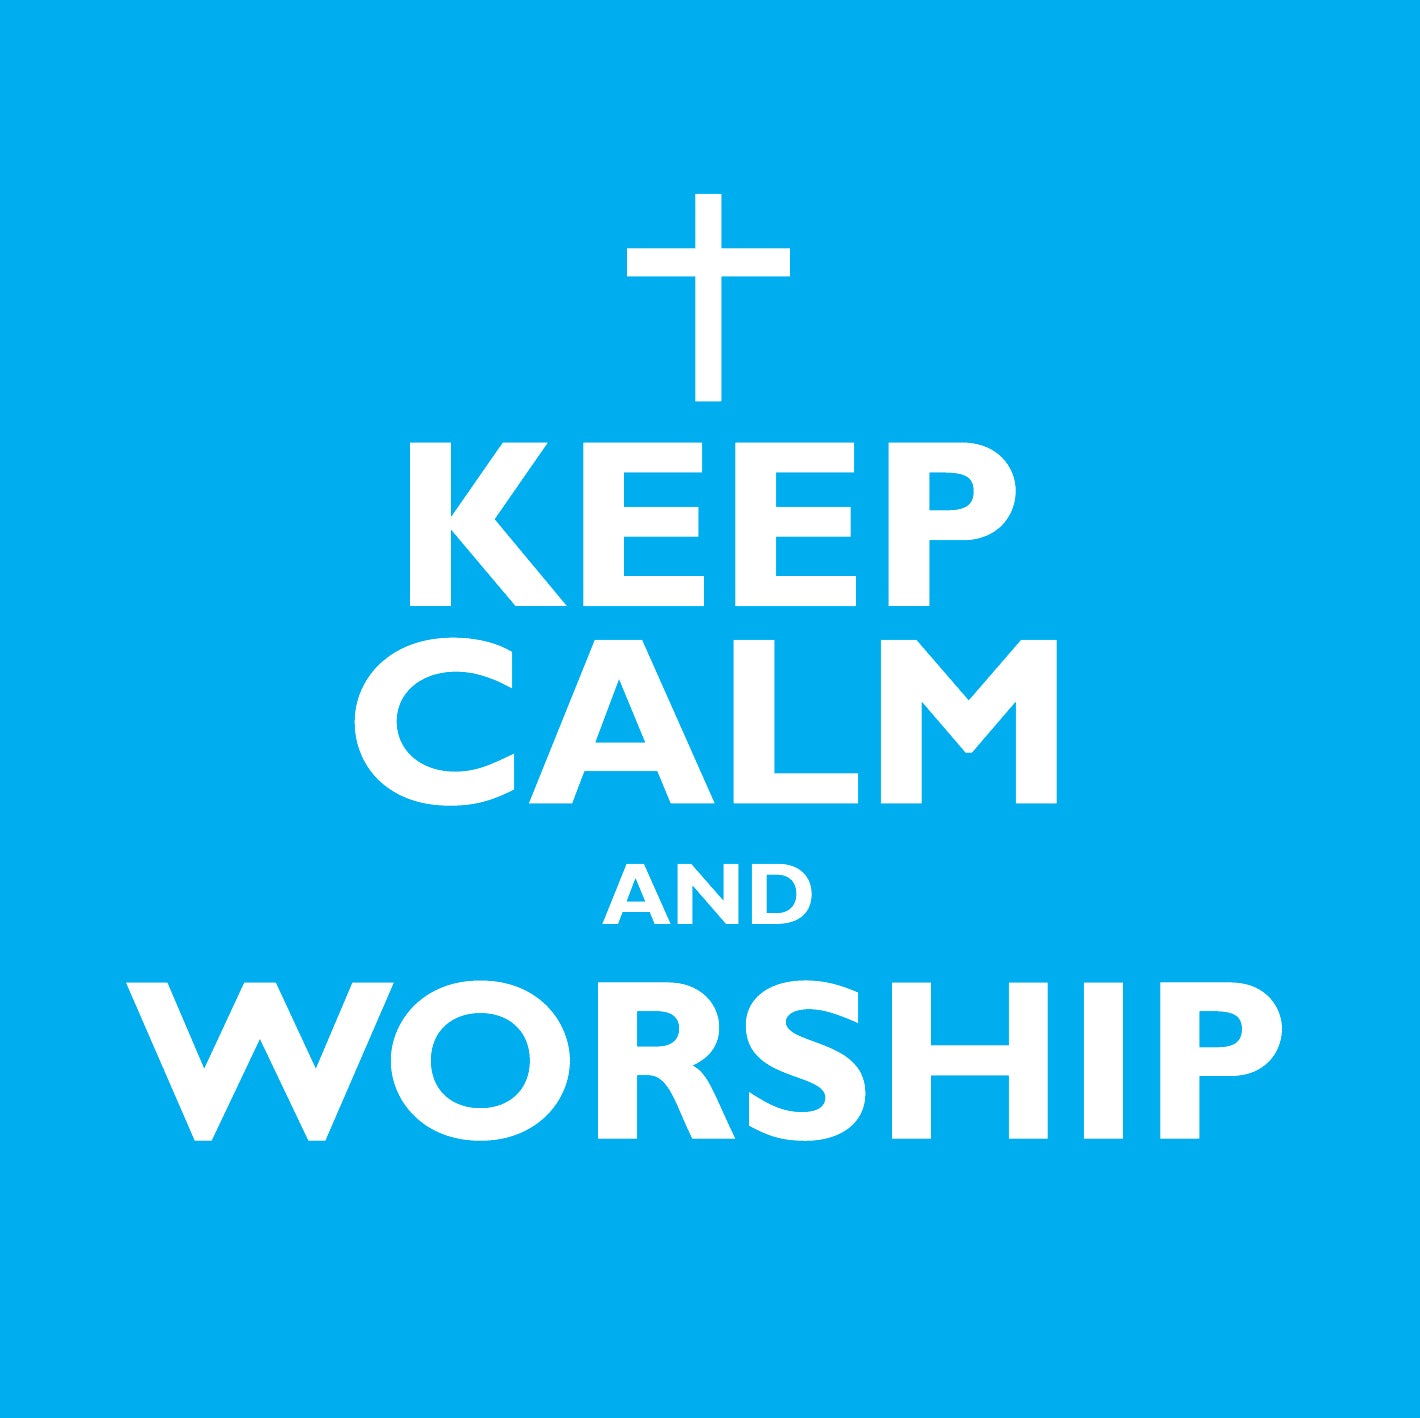 Keep Calm And WorshipKeep Calm And Worship